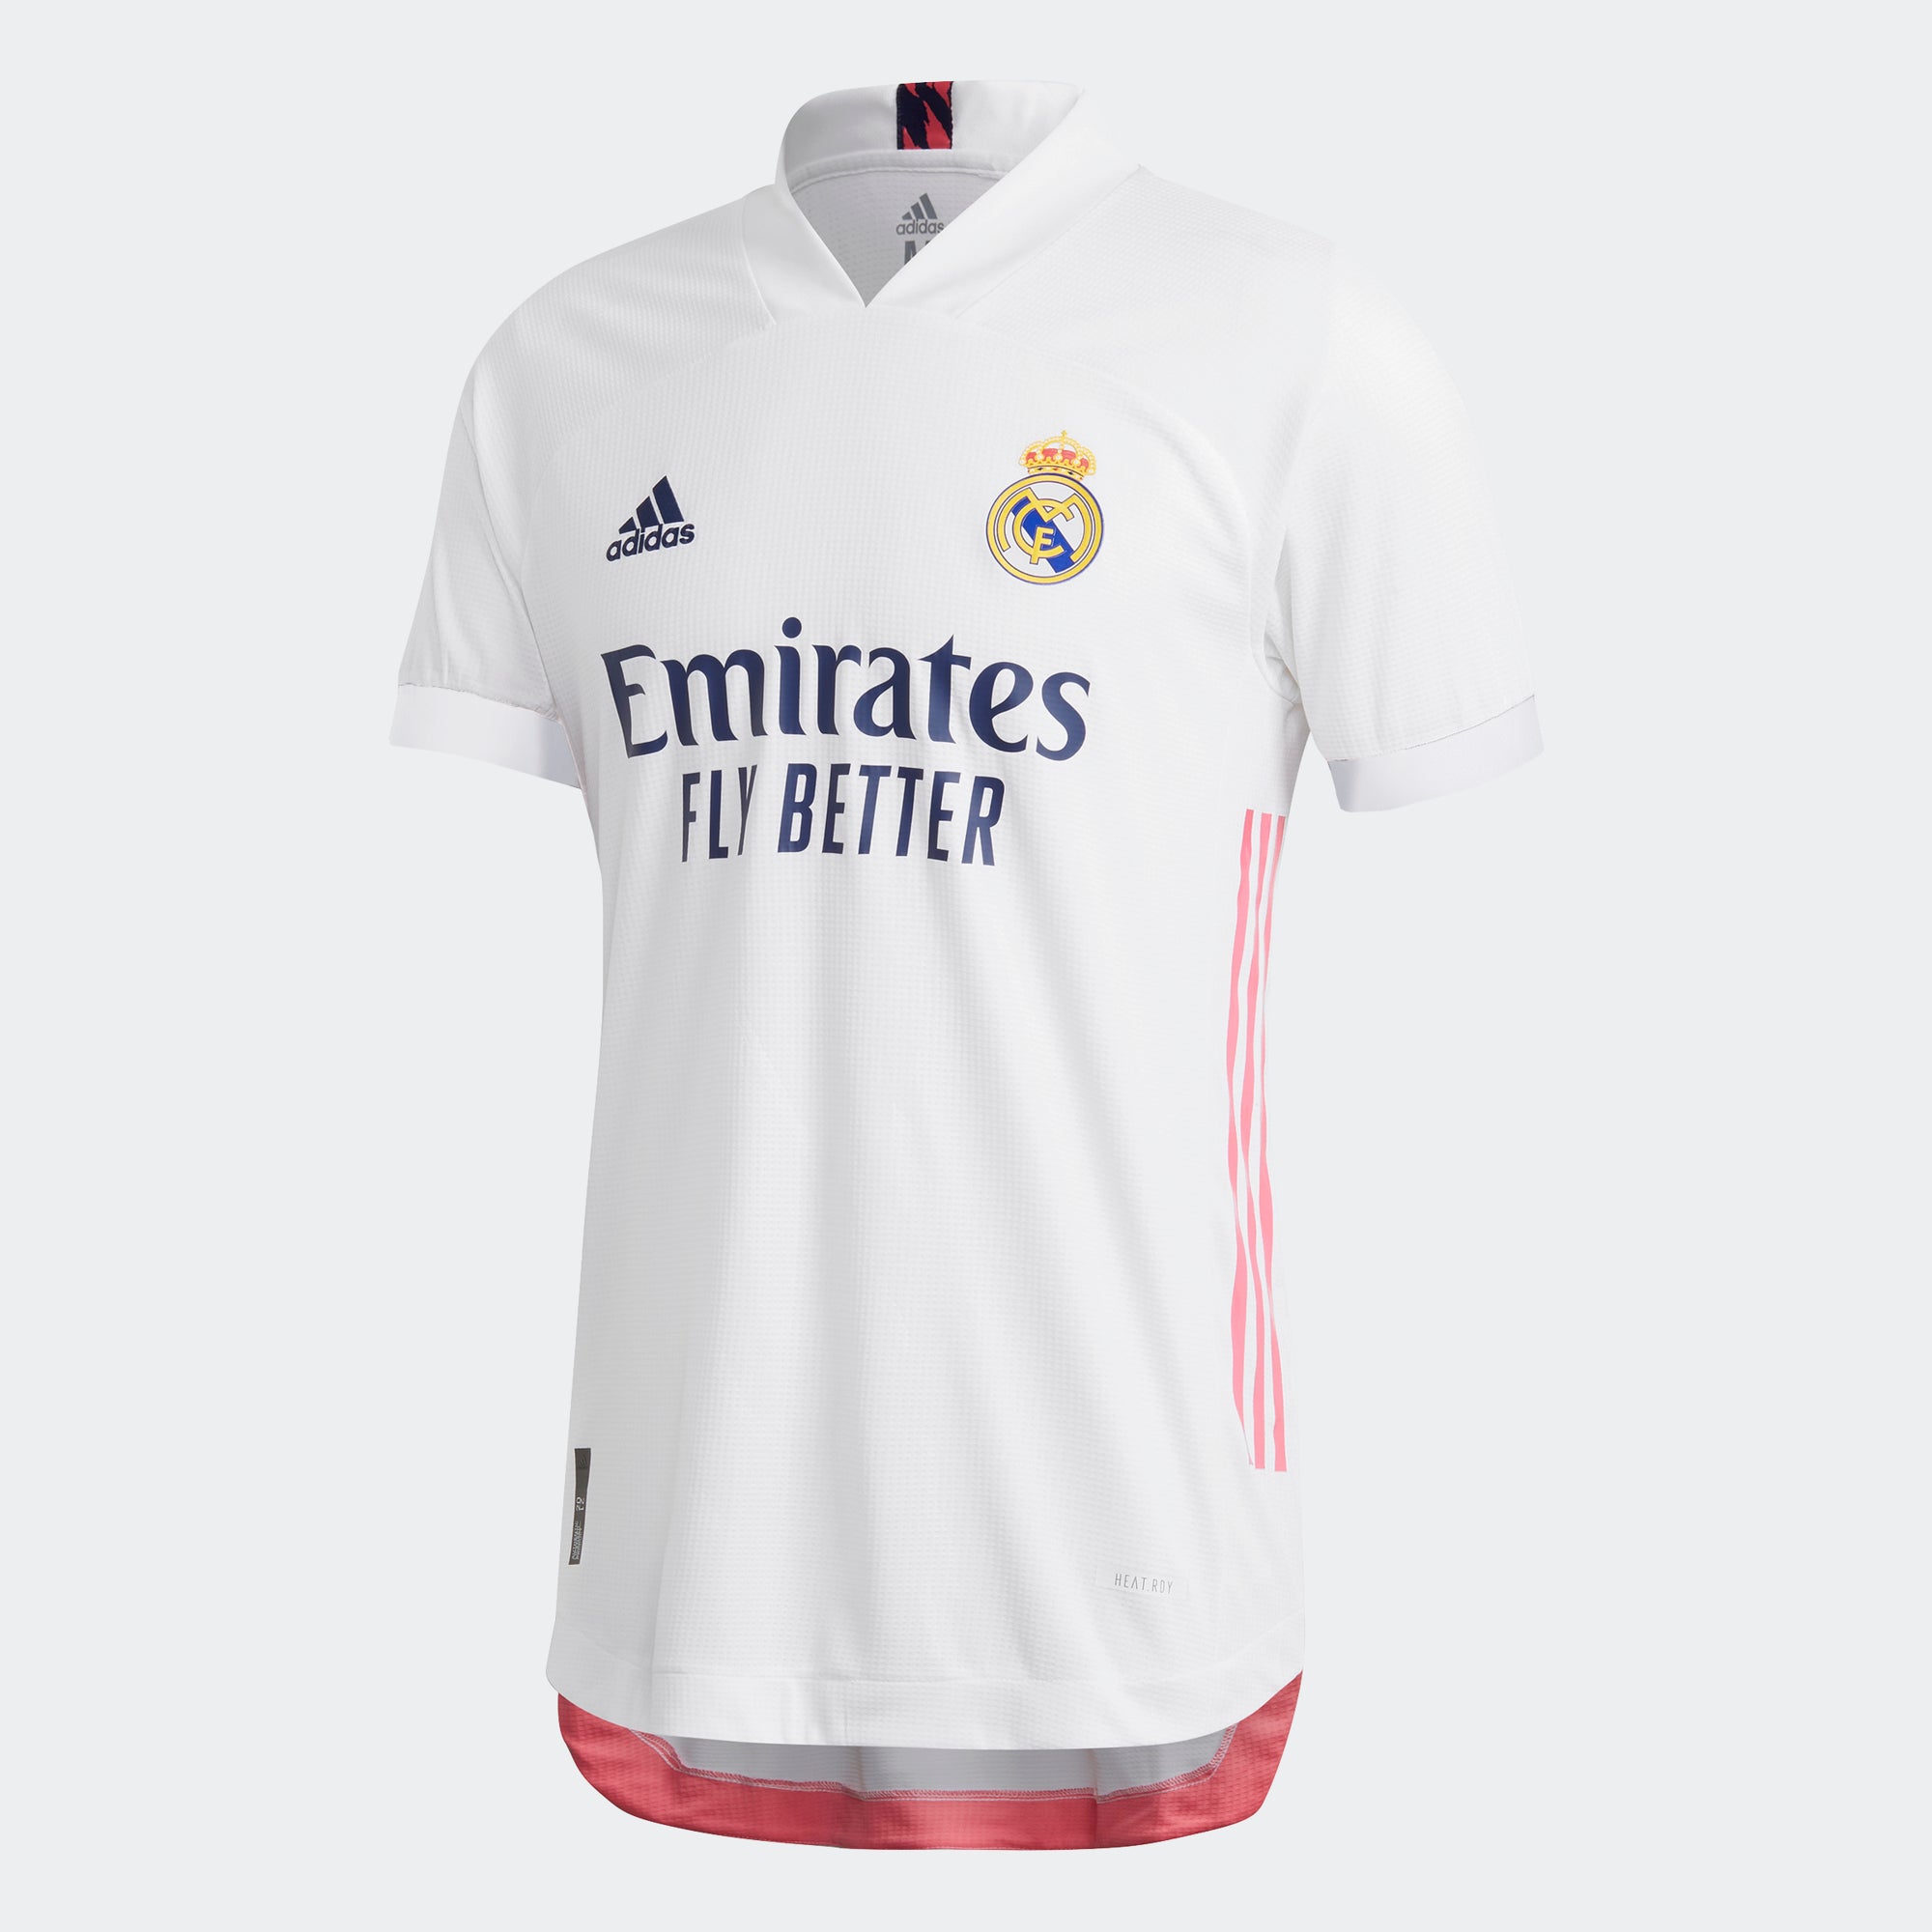 Verschrikkelijk goedkeuren Executie adidas Real Madrid Authentic Home Short Sleeve Jersey 20/21 Men's